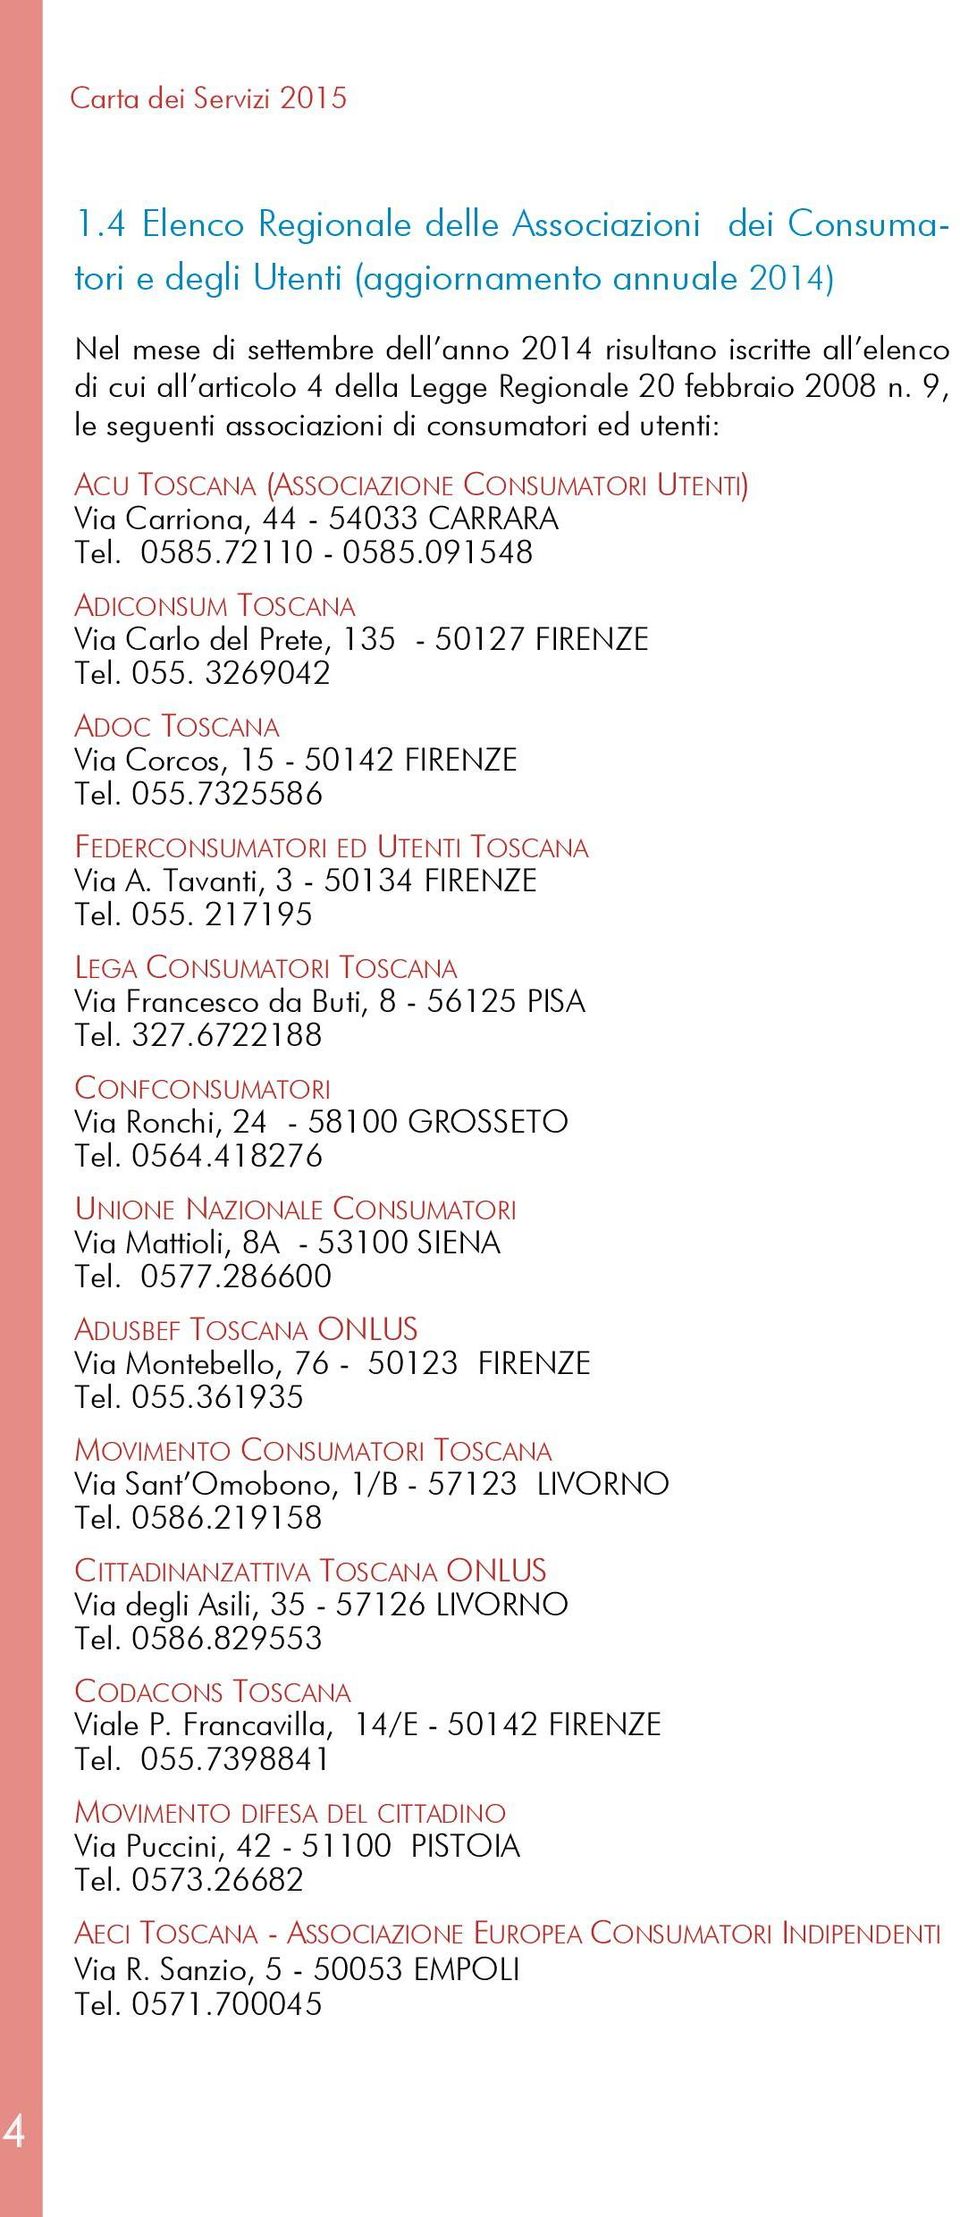 Regionale 20 febbraio 2008 n. 9, le seguenti associazioni di consumatori ed utenti: ACU TOSCANA (ASSOCIAZIONE CONSUMATORI UTENTI) Via Carriona, 44-54033 CARRARA Tel. 0585.72110-0585.